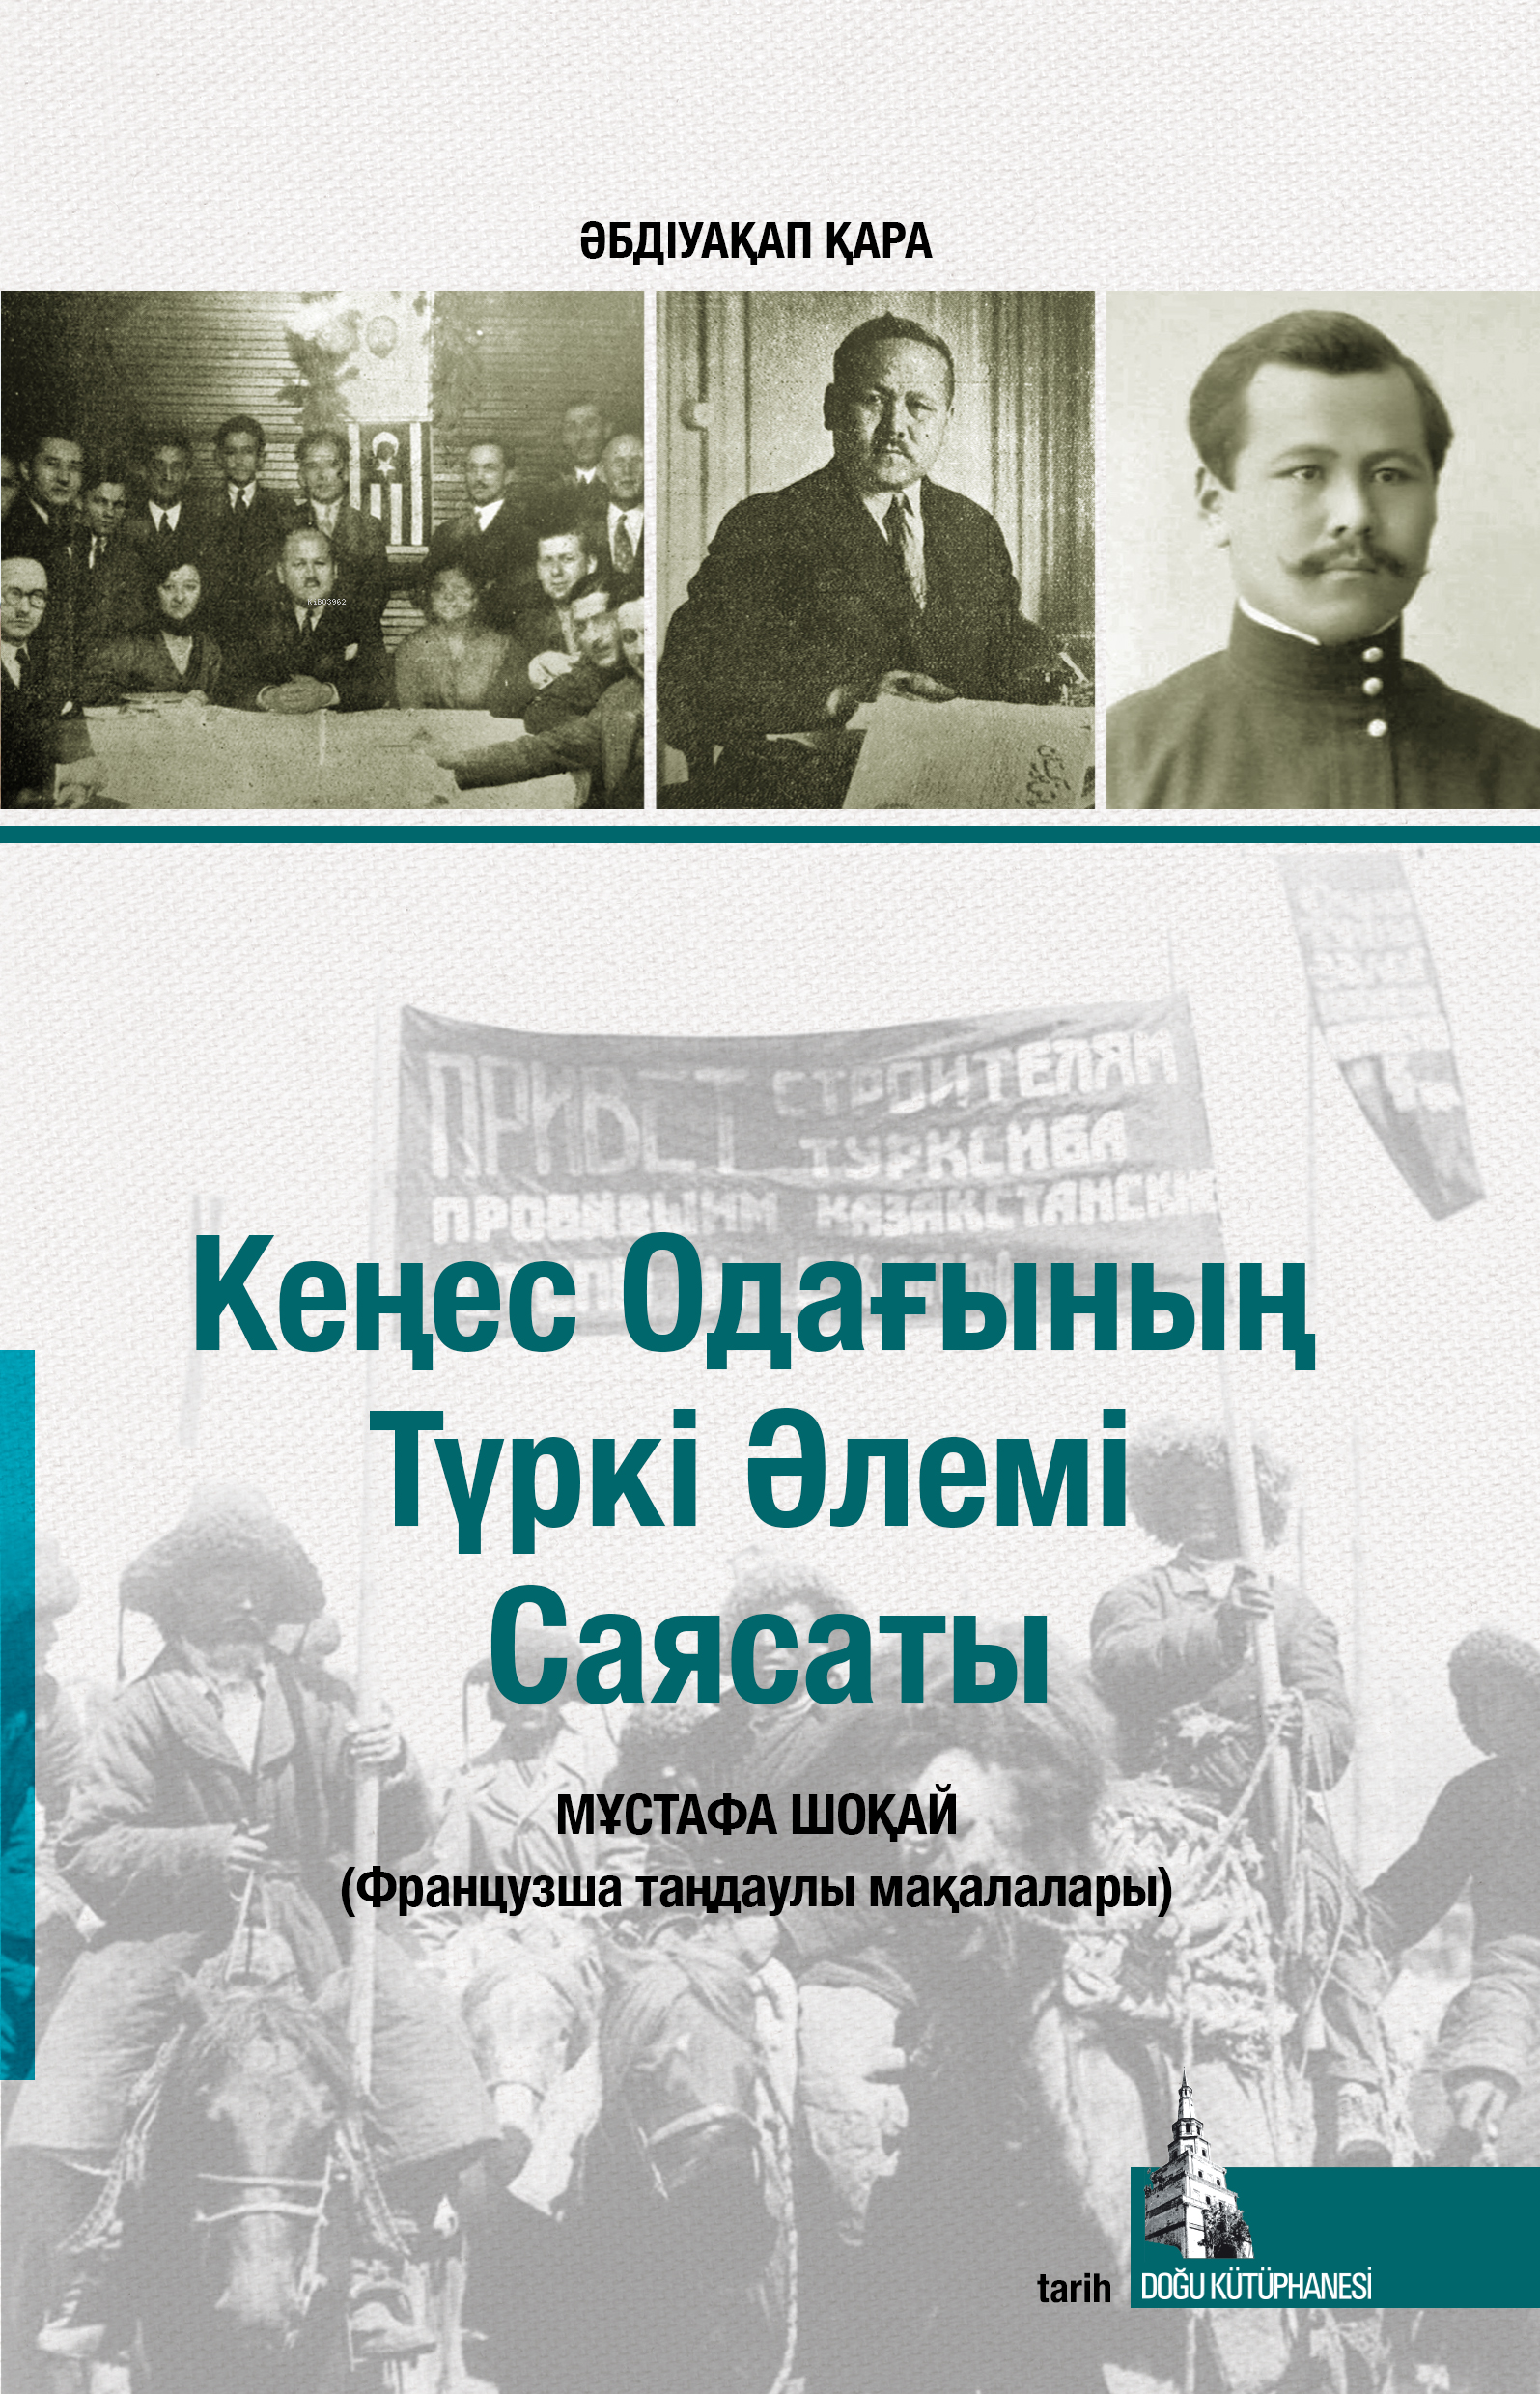 Sovyetler Birliğinin Türk Dünyası Politikası - Kazakça